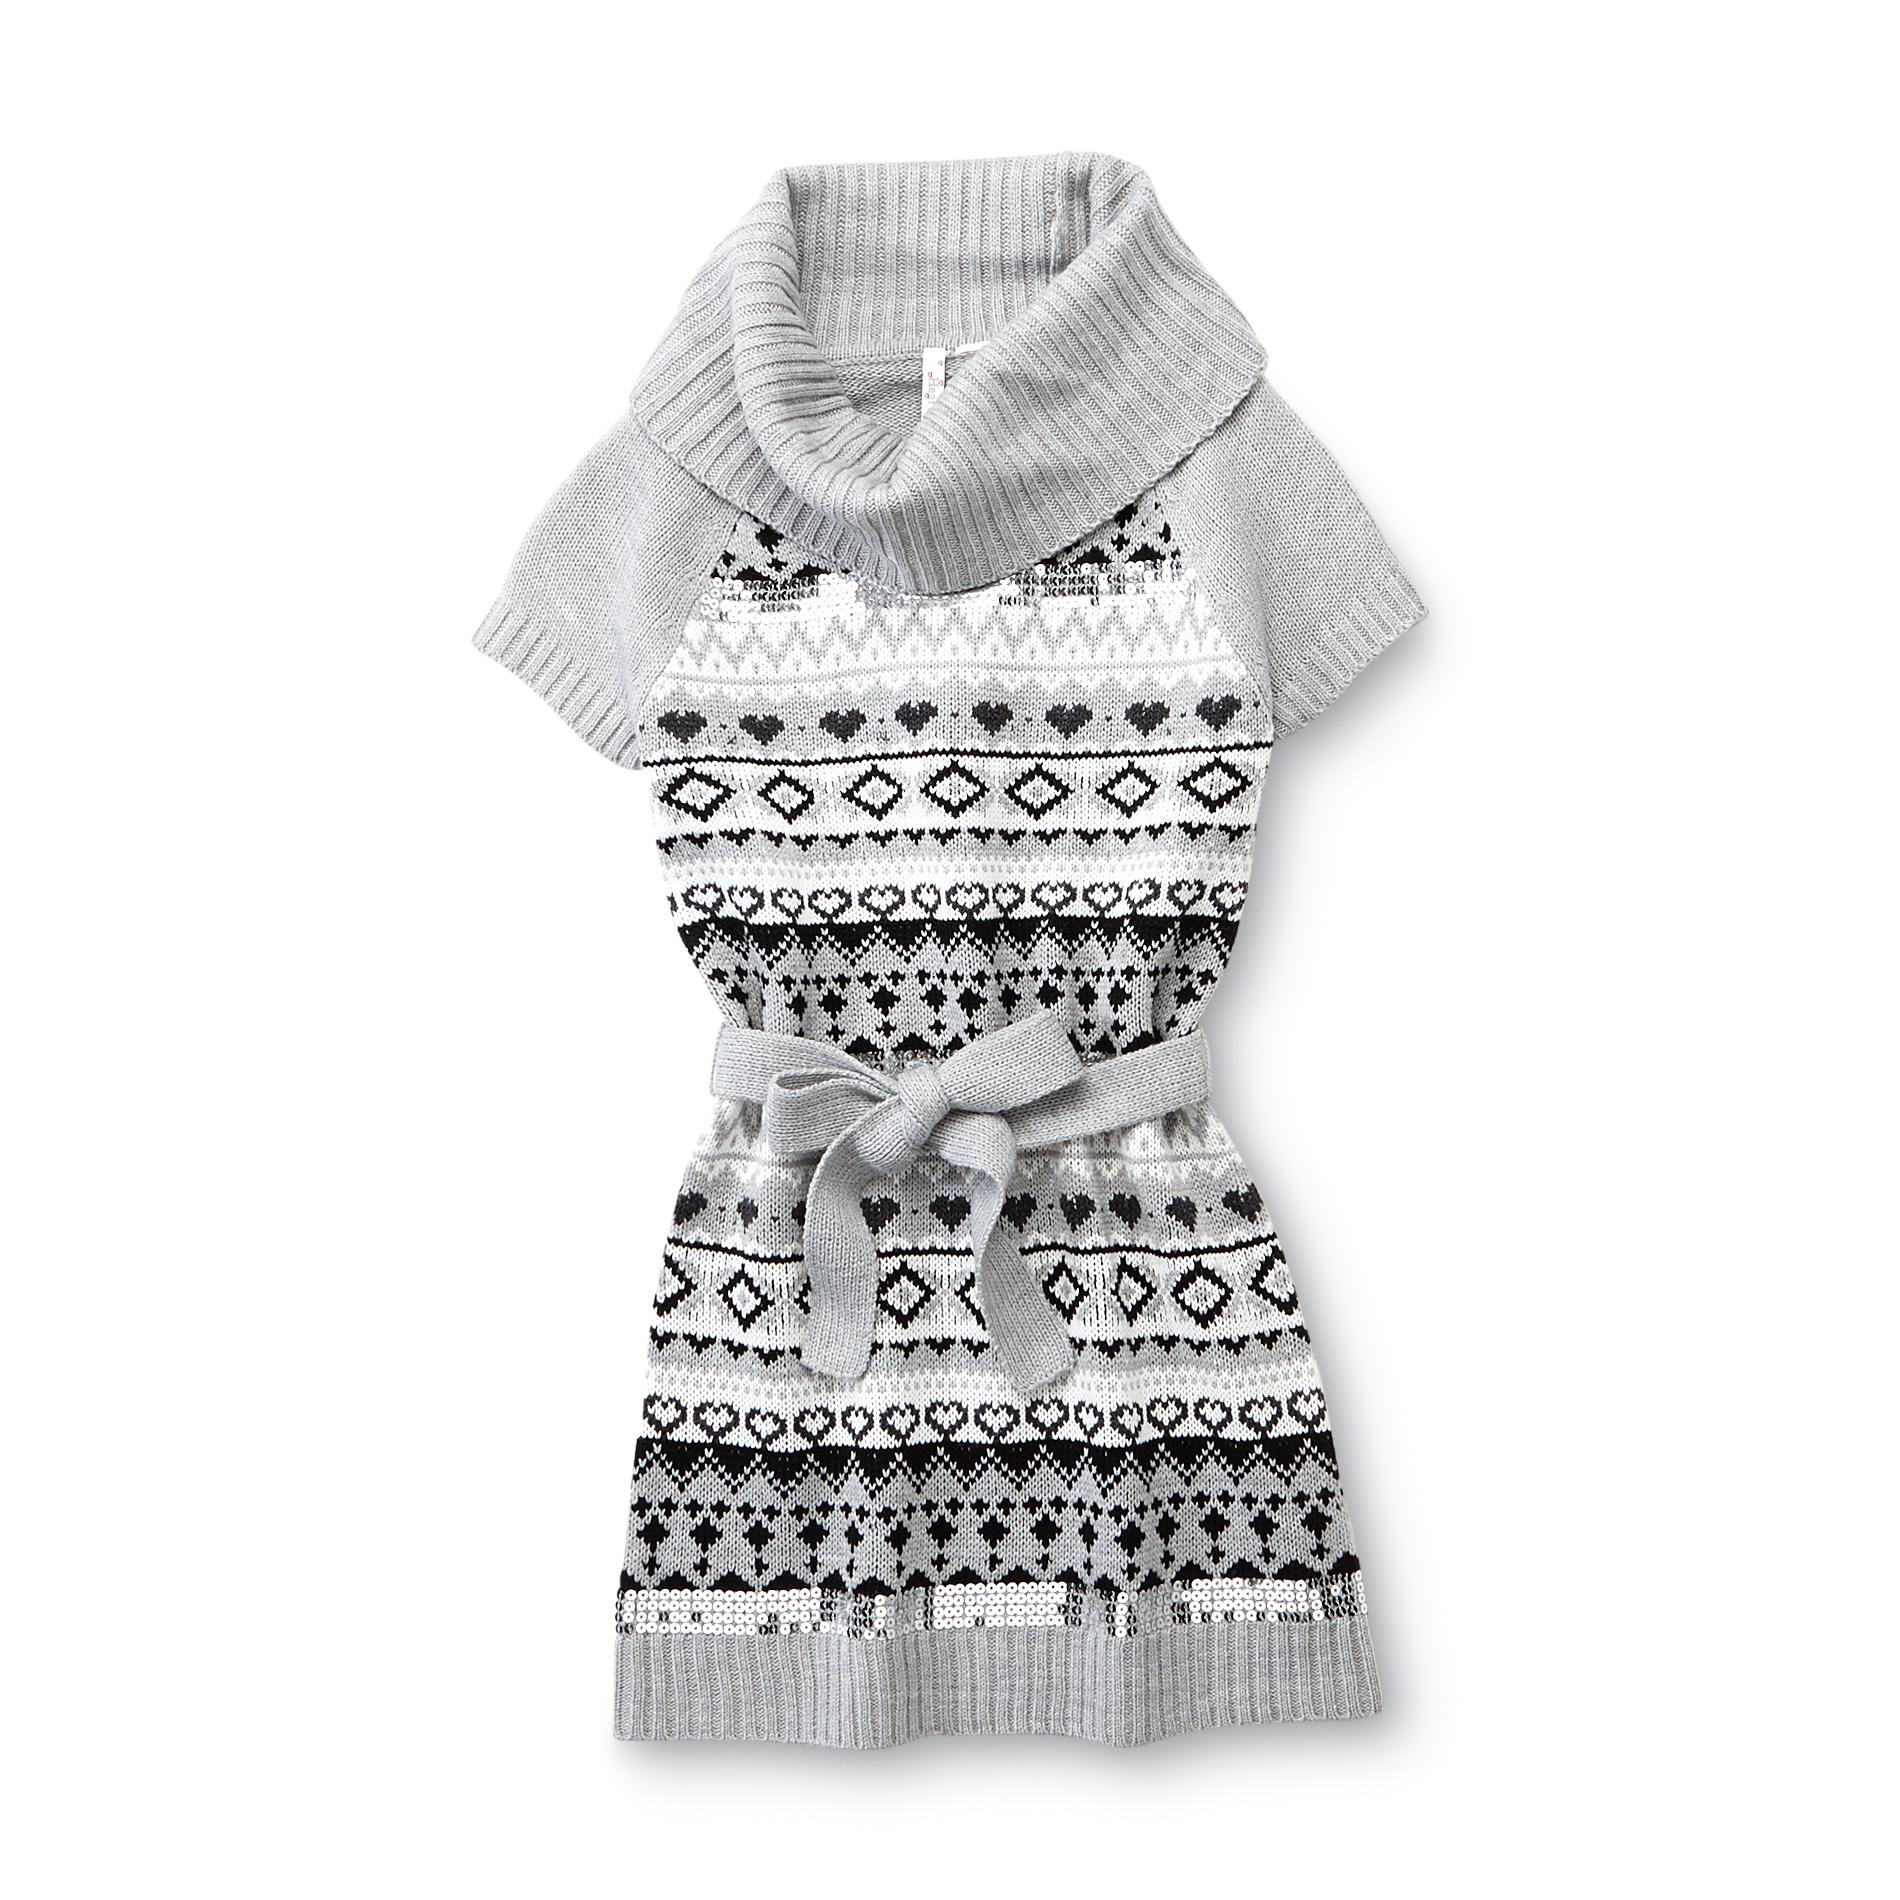 NYC Knitwear Girl's Tunic Sweater - Fair Isle